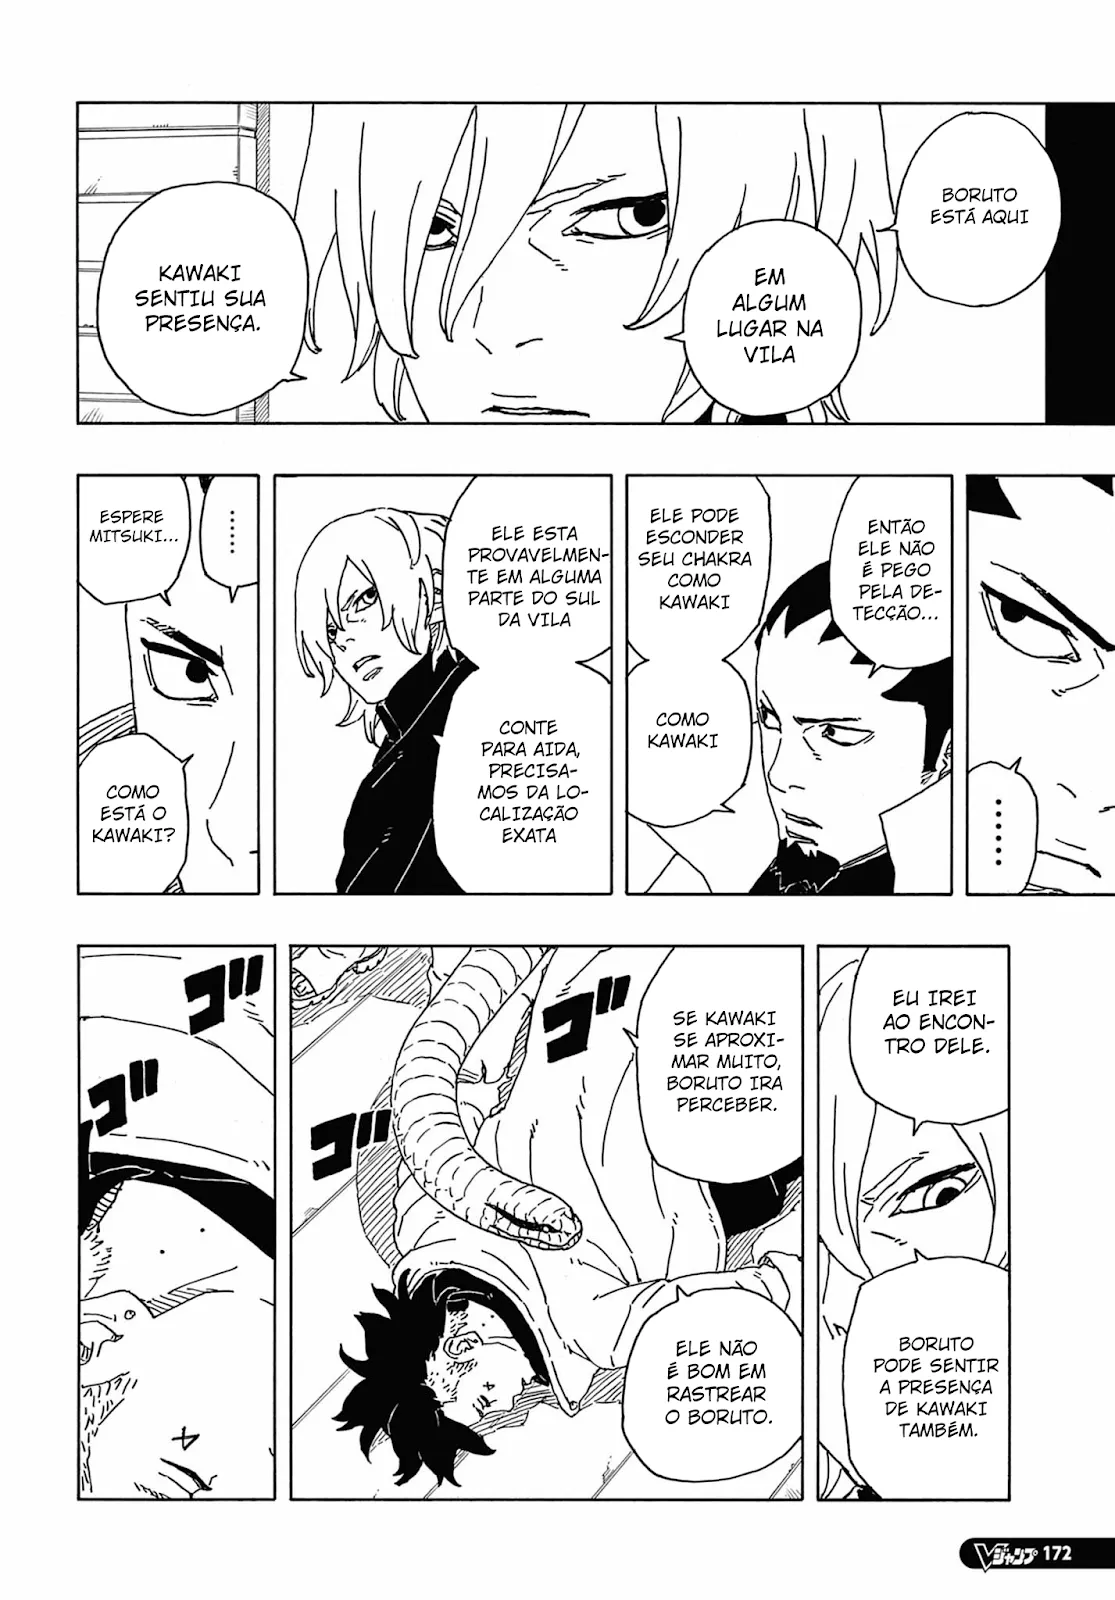 sasuke - Sasuke a maior decepção desse manga  22